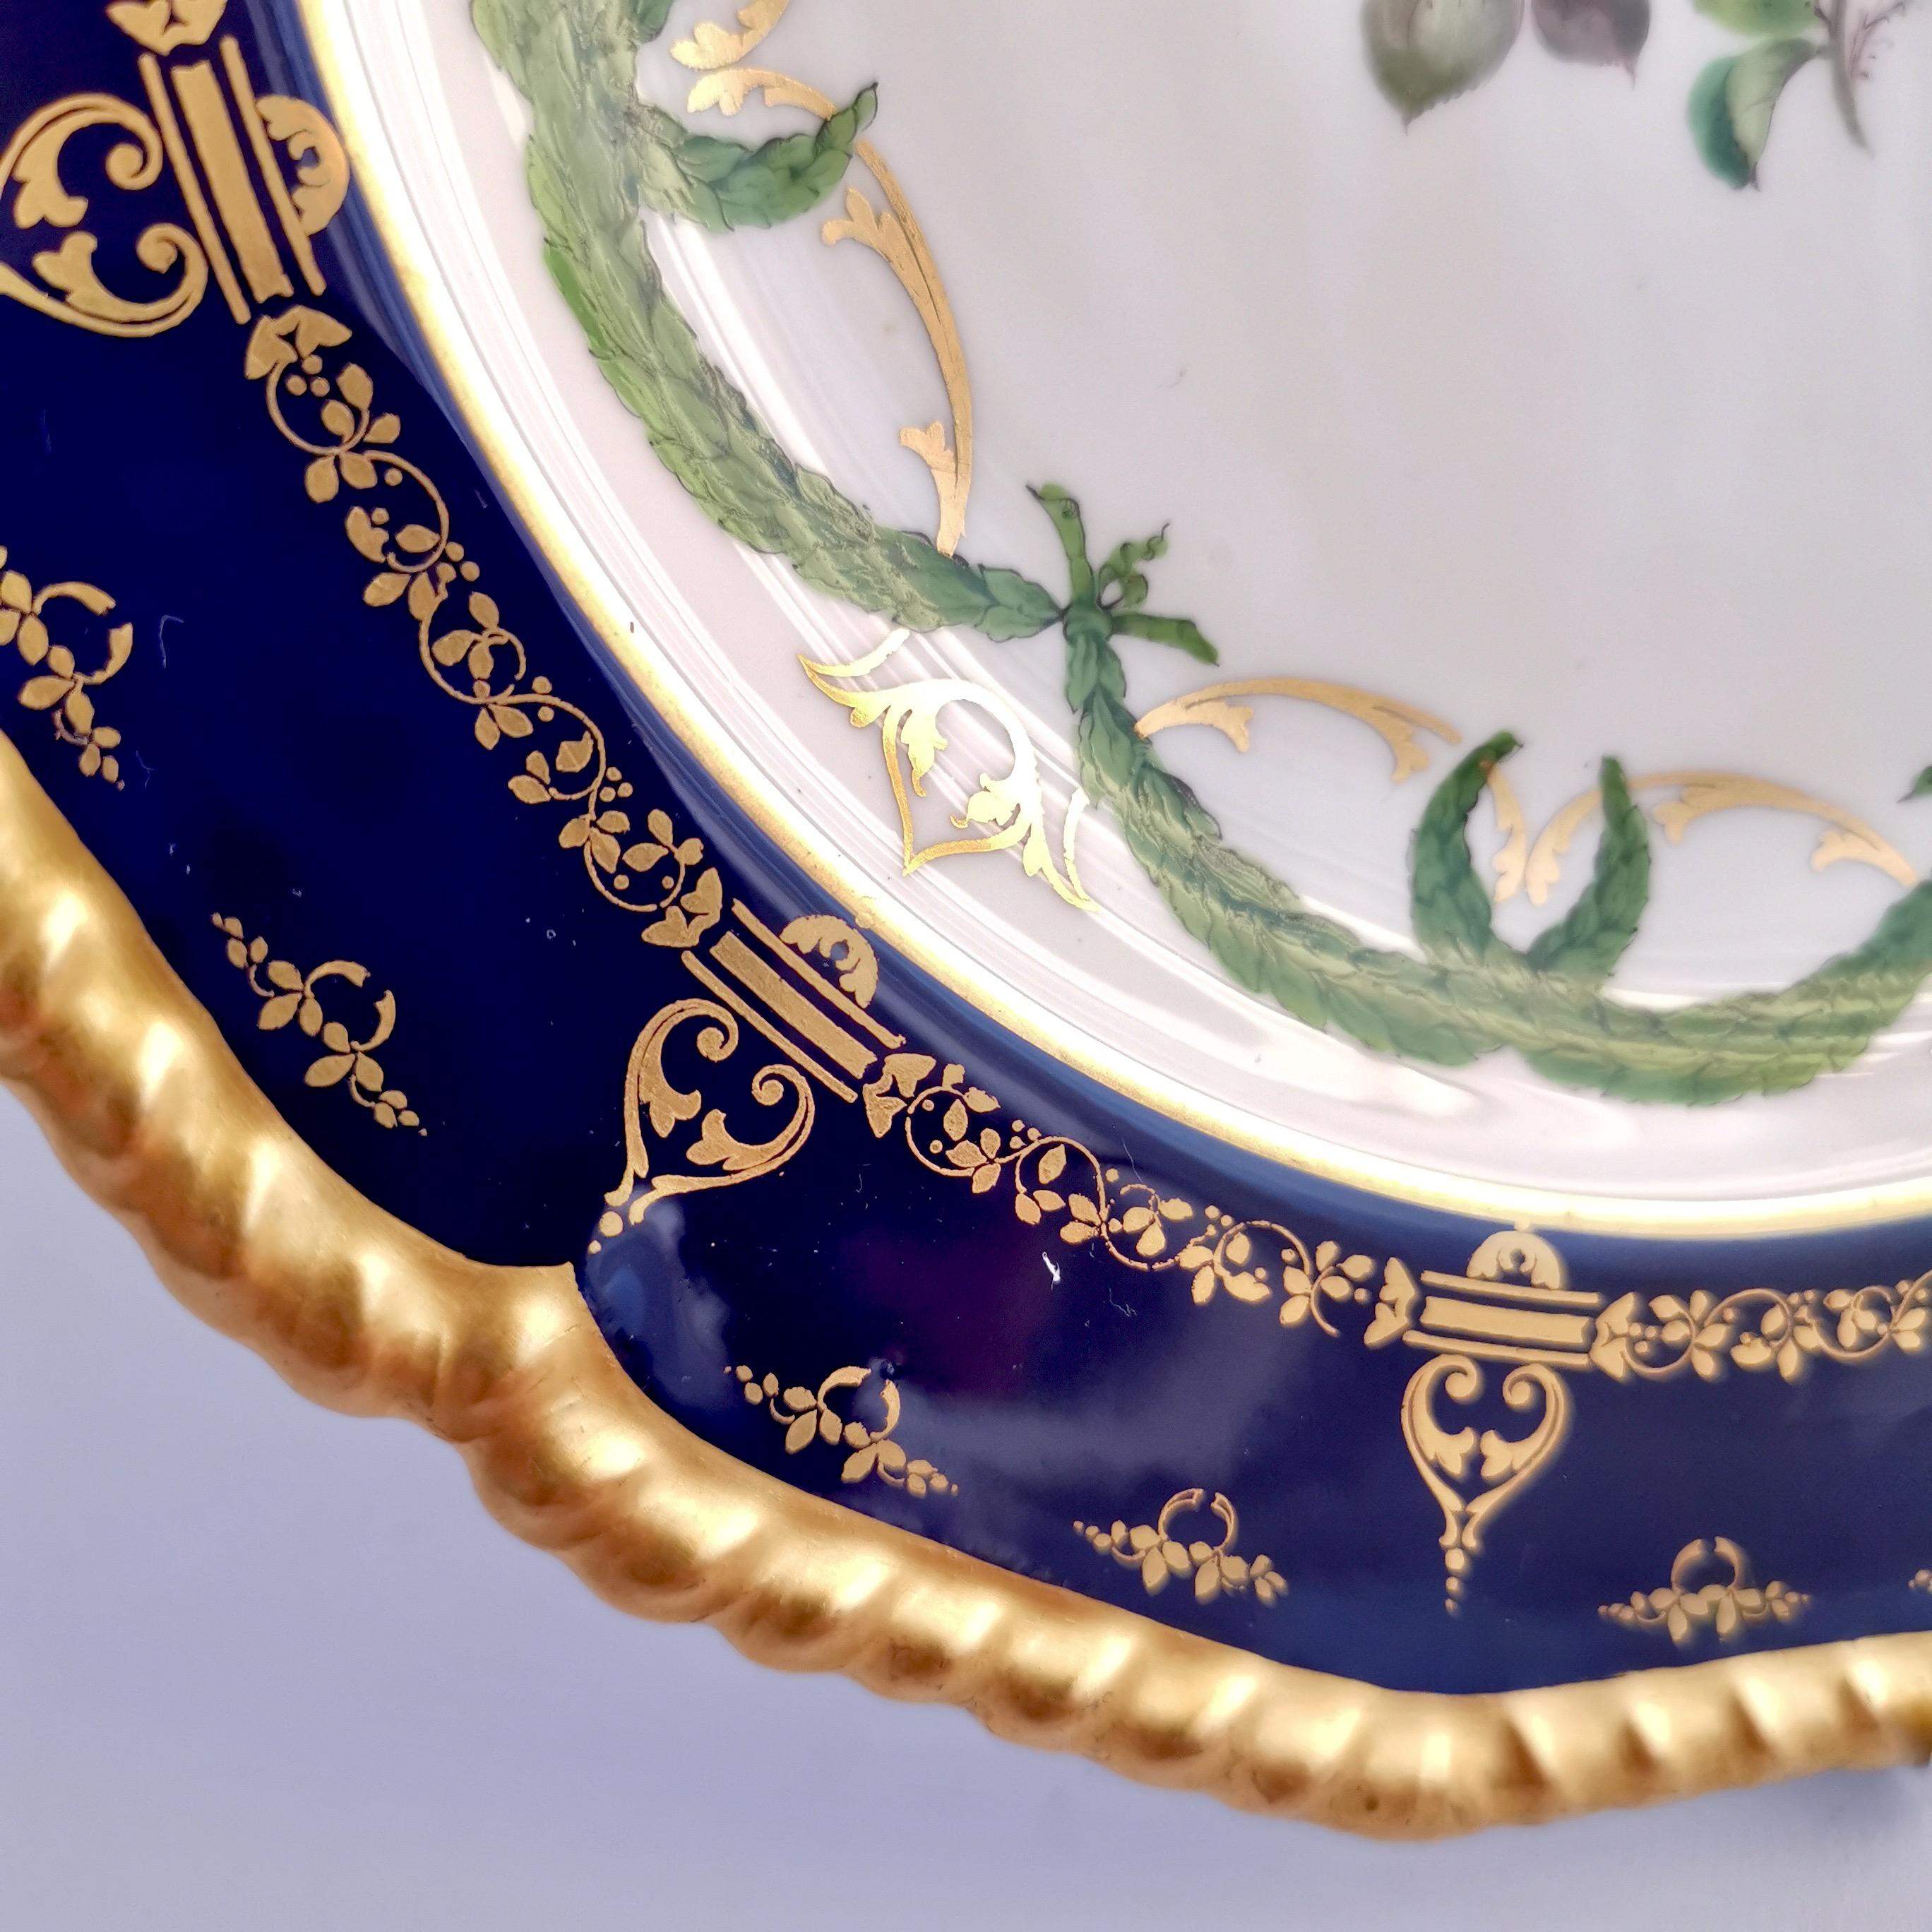 Royal Crown Derby Porcelain Plate, Cobalt Blue, Gilt and Billingsley Roses, 1907 4